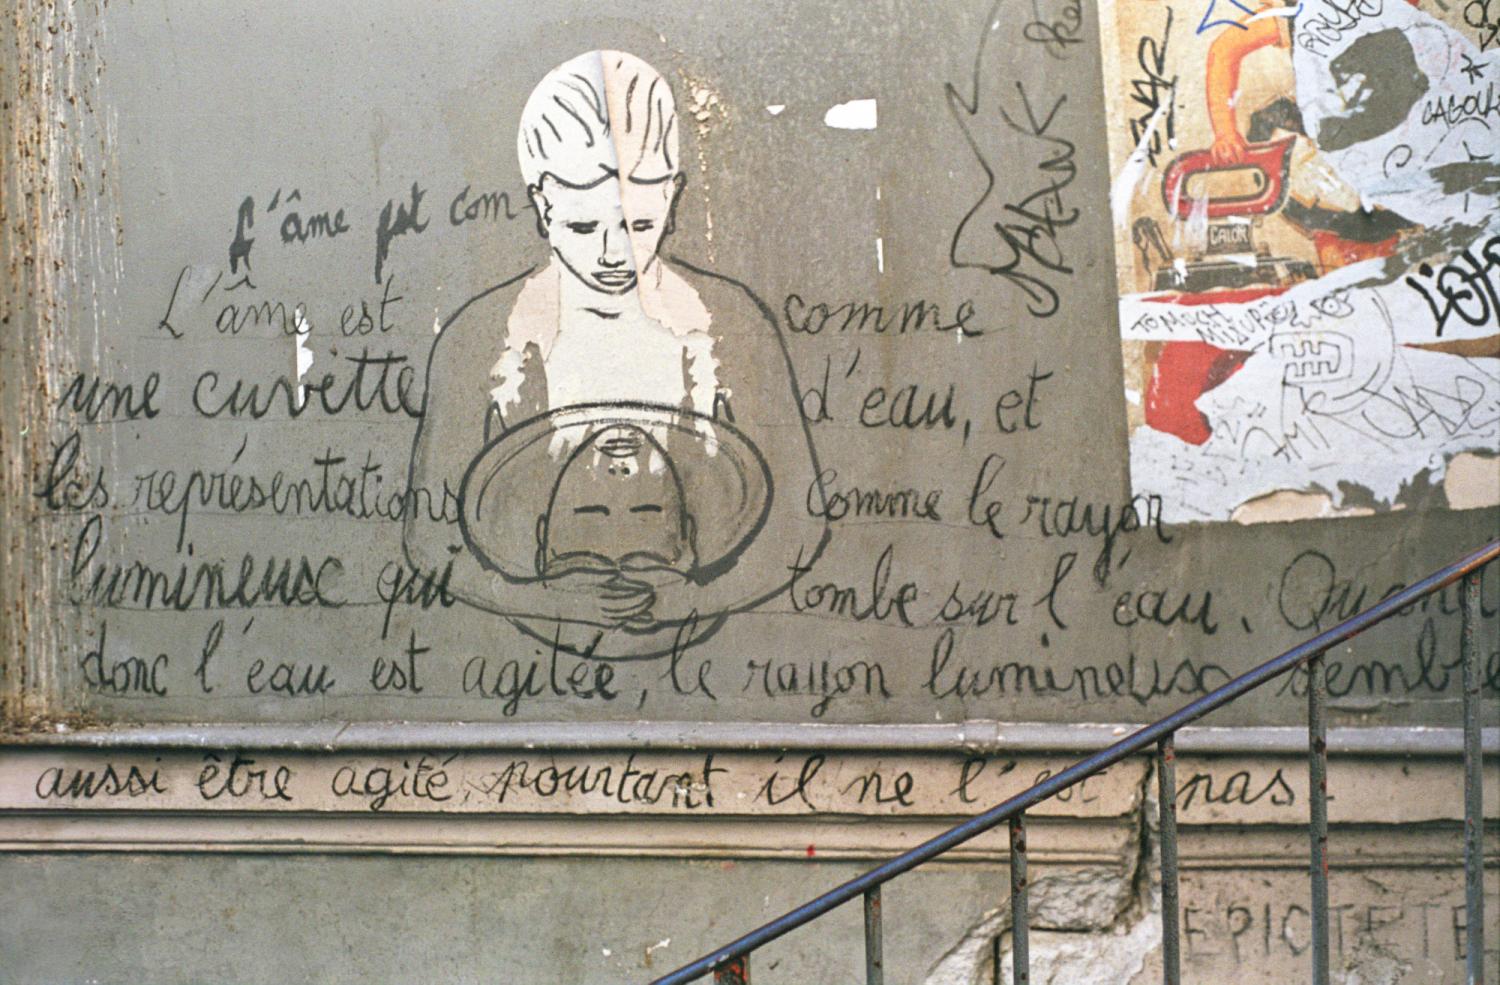 Sur un mur de Montmartre, près d'une affiche déchirée et accompagné d'une citation d'Epictète, dessin d'une personne qui regarde son reflet dans une bassine d'eau qu'elle encercle de ses bras. Paris, octobre 2008.